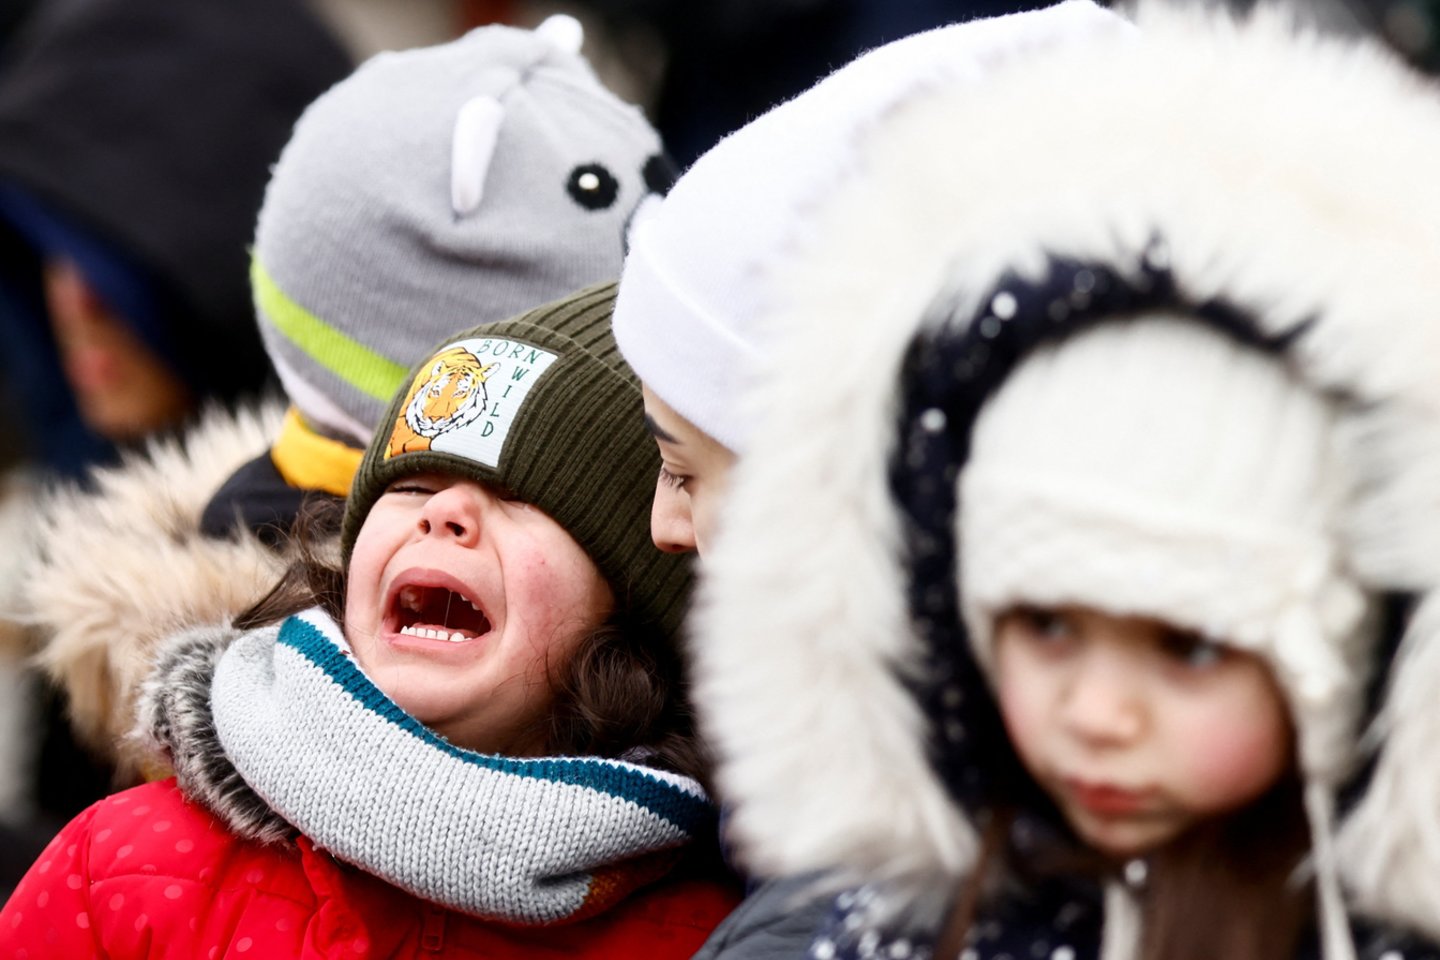 Valstybės vaiko teisių apsaugos ir įvaikinimo tarnyba stabdo norinčiųjų globoti nuo karo pabėgusius ukrainiečių vaikus registraciją, sulaukus pakankamo skaičiaus potencialių globėjų.<br>REUTERS/Scanpix nuotr.